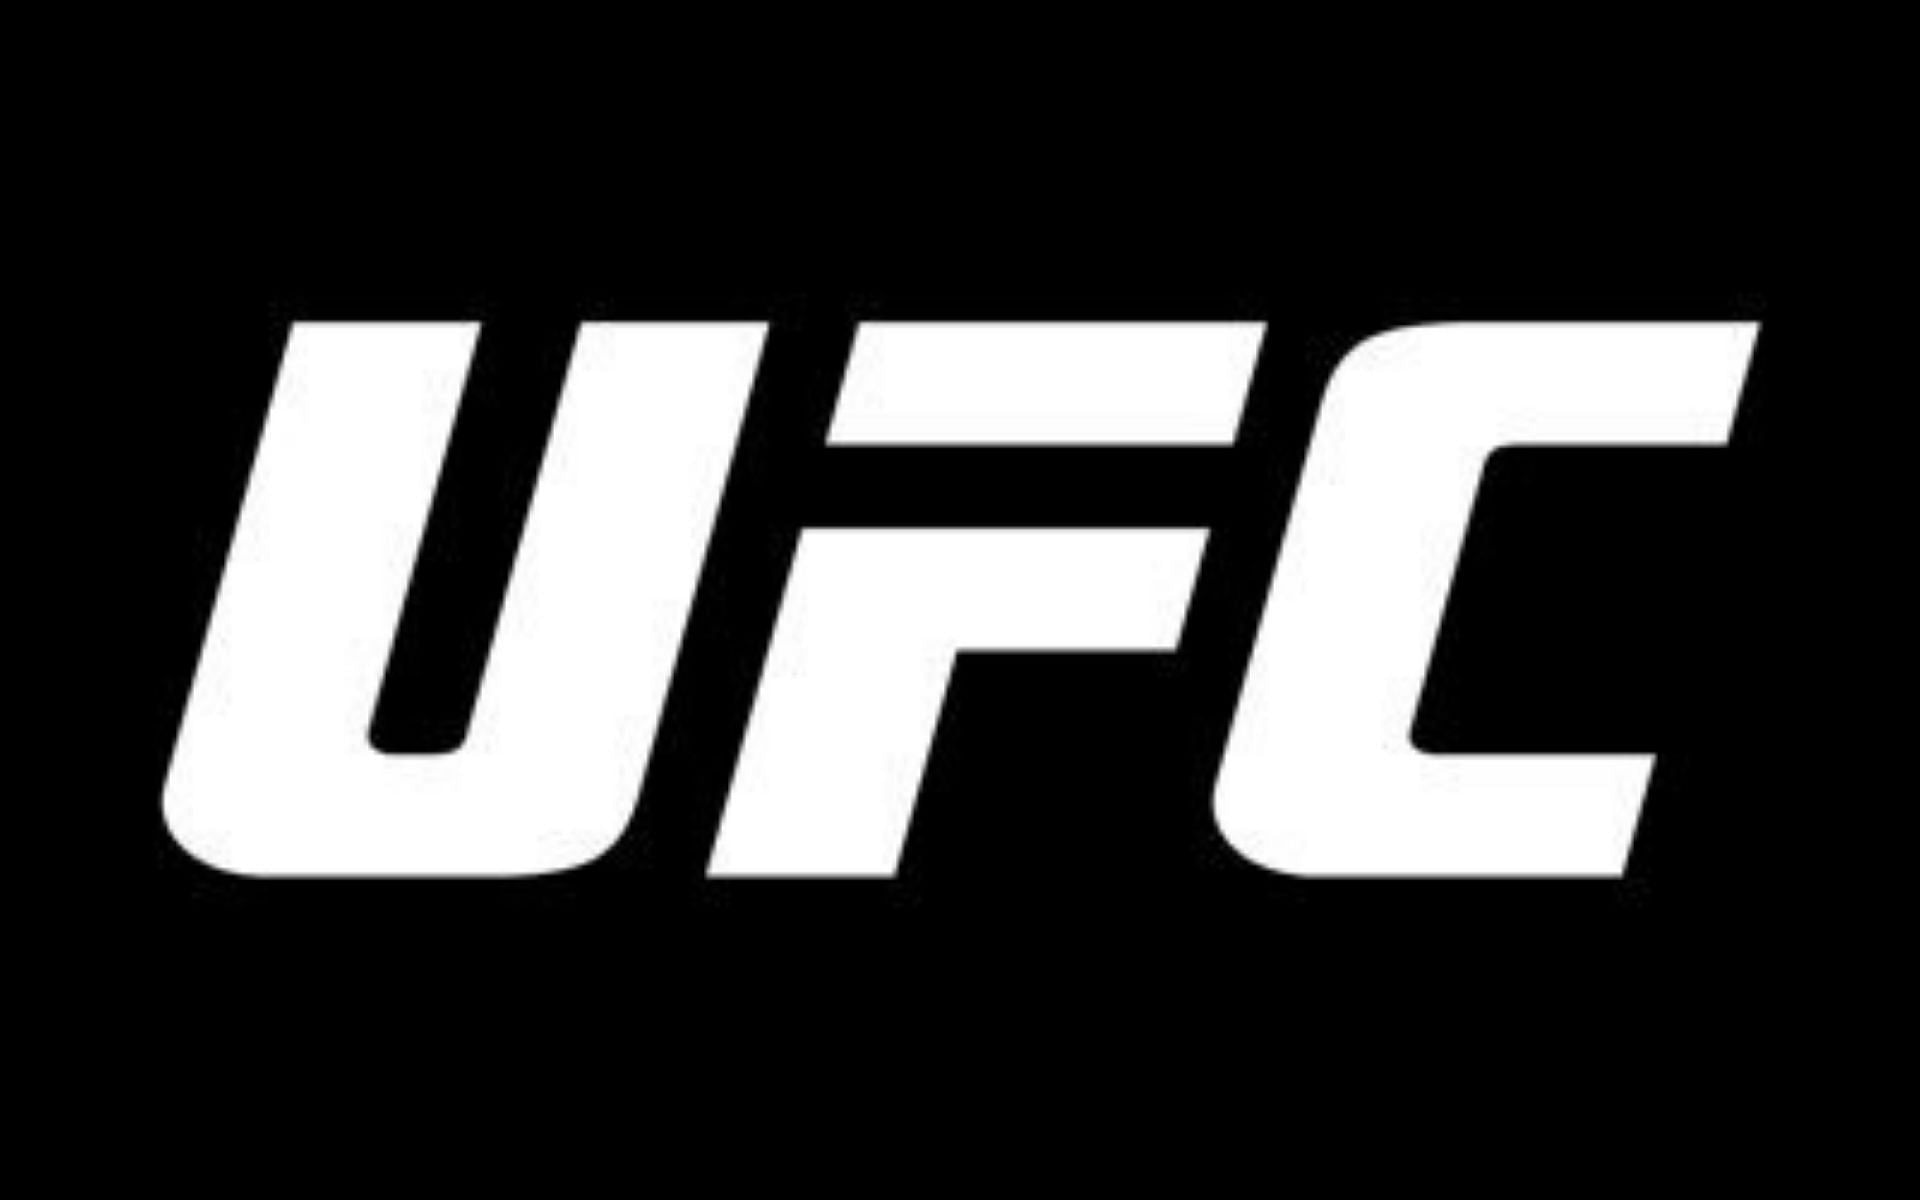 UFC logo [Image courtesy of @ufc Twitter]